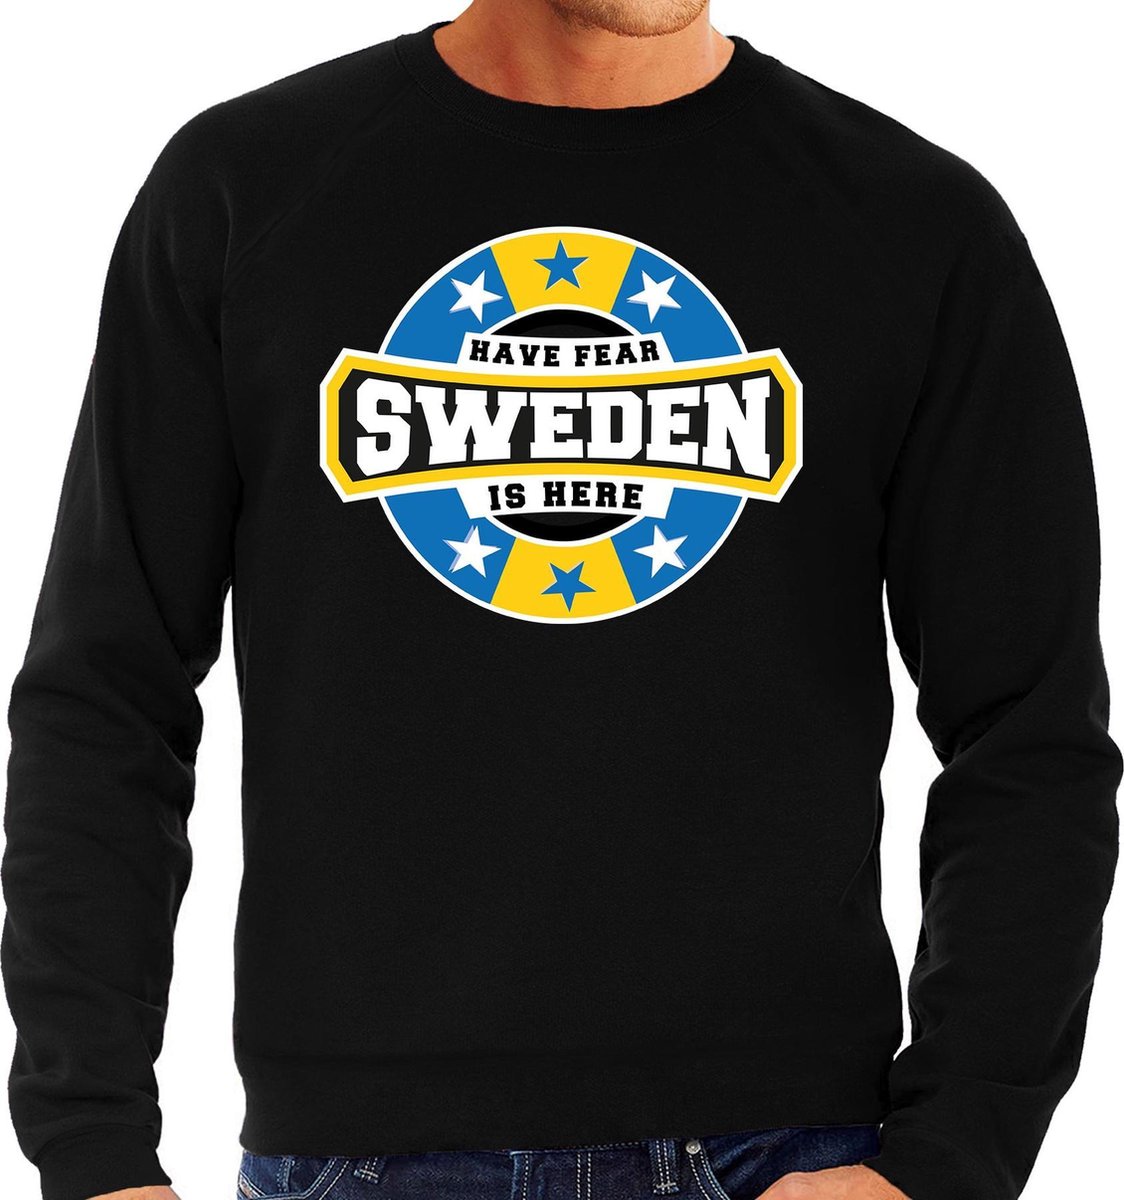 Afbeelding van product Bellatio Decorations  Have fear Sweden is here sweater met sterren embleem in de kleuren van de Zweedse vlag - zwart - heren - Zweden supporter / Zweeds elftal fan trui / EK / WK / kleding M  - maat M